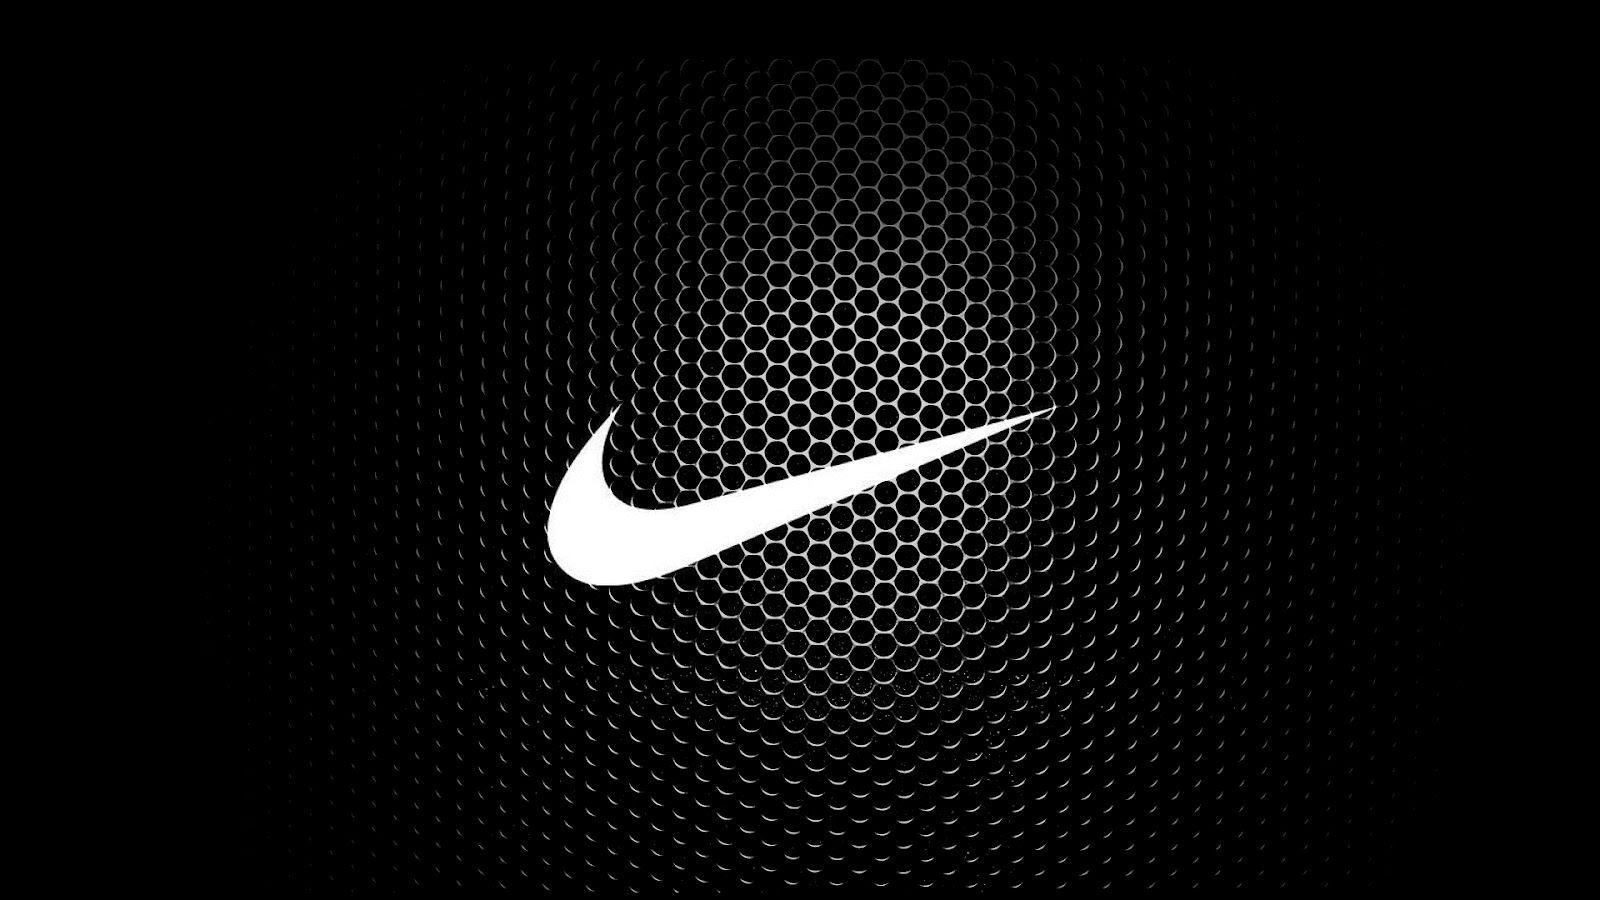 Nike Logo HD 1080p Wallpaper Download. Coisas que adoro